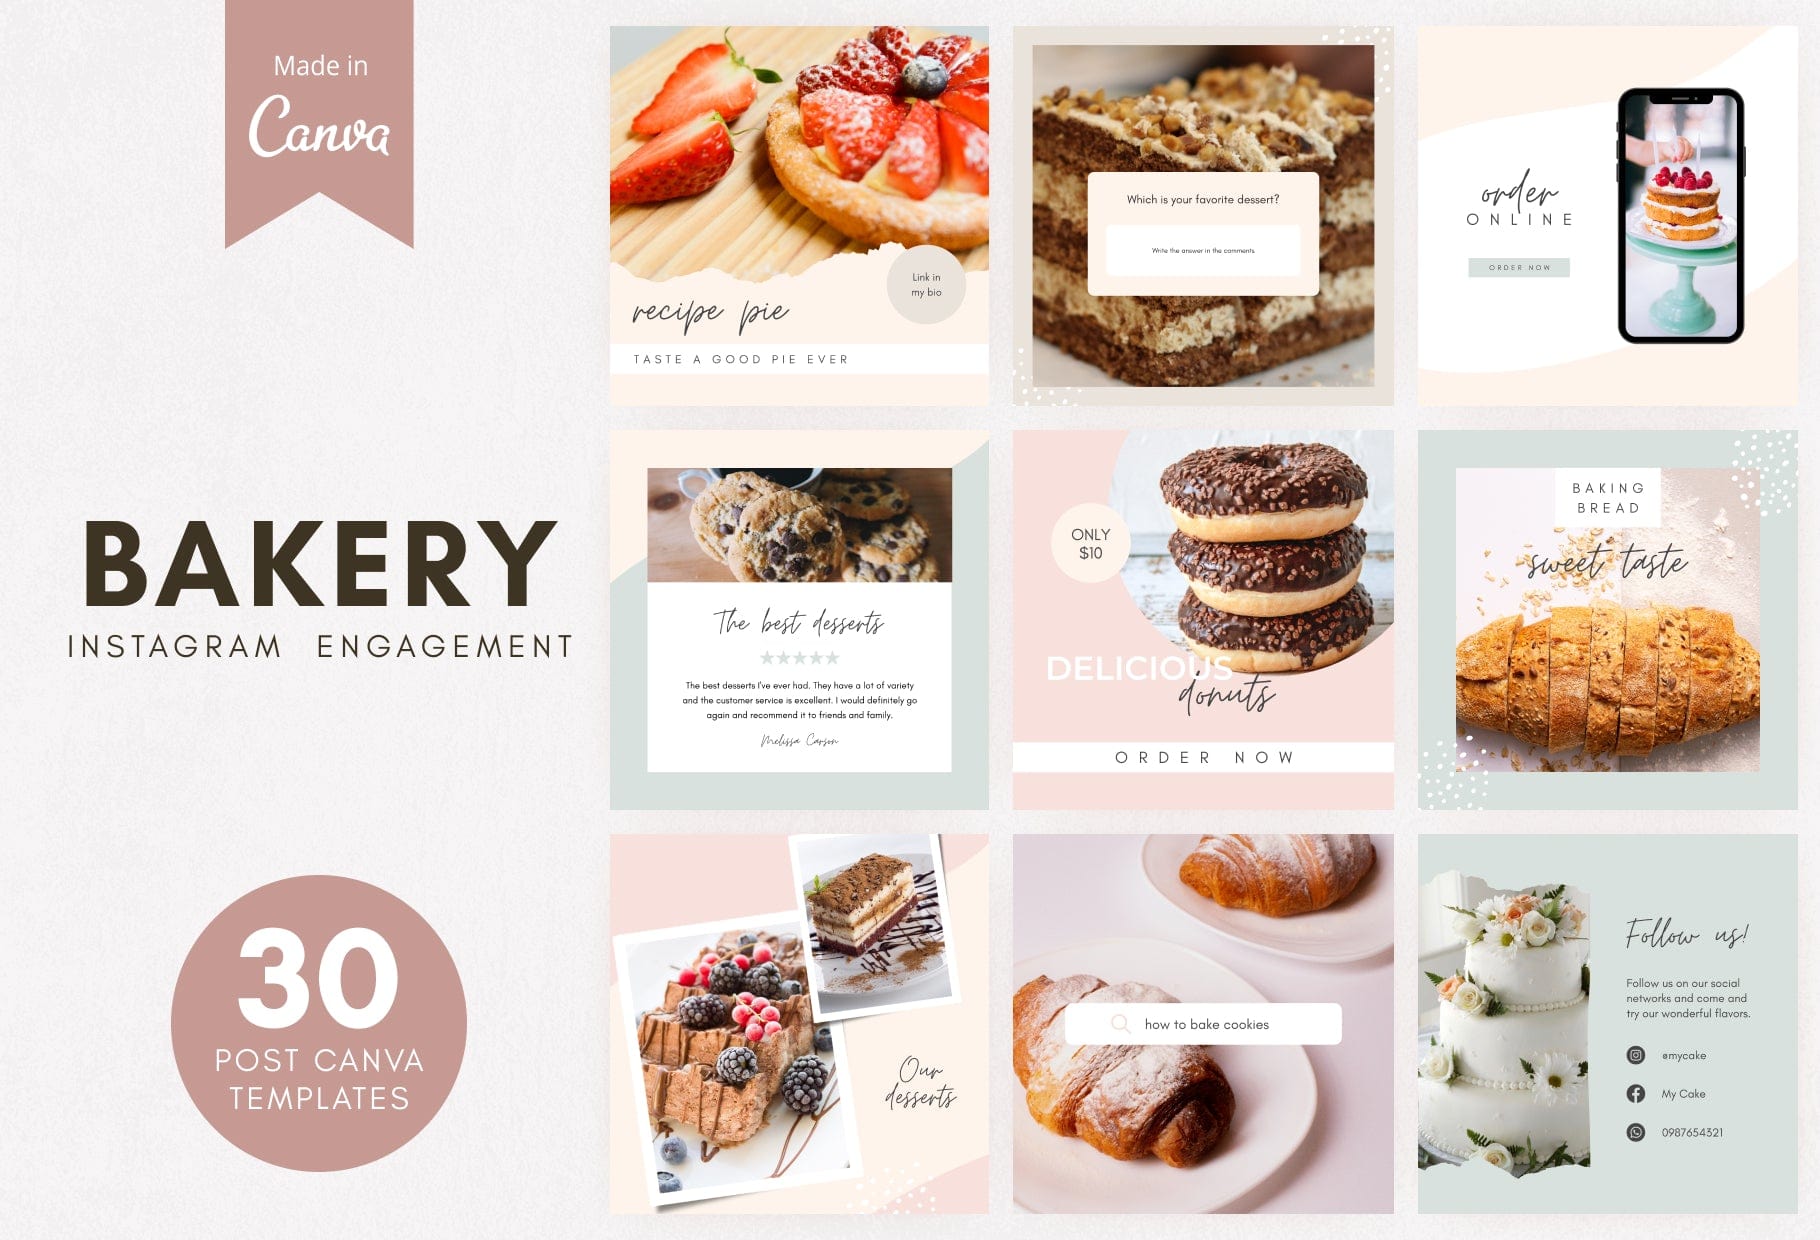 Ladystrategist Shop cung cấp cho bạn mẫu bài đăng Instagram đầy sáng tạo với hiệu ứng bánh ngọt nổi bật. Với phông chữ Canva sẵn có, bạn có thể tự tạo bài đăng cực kỳ ấn tượng. Hãy xem ngay hình ảnh liên quan để biết thêm chi tiết!